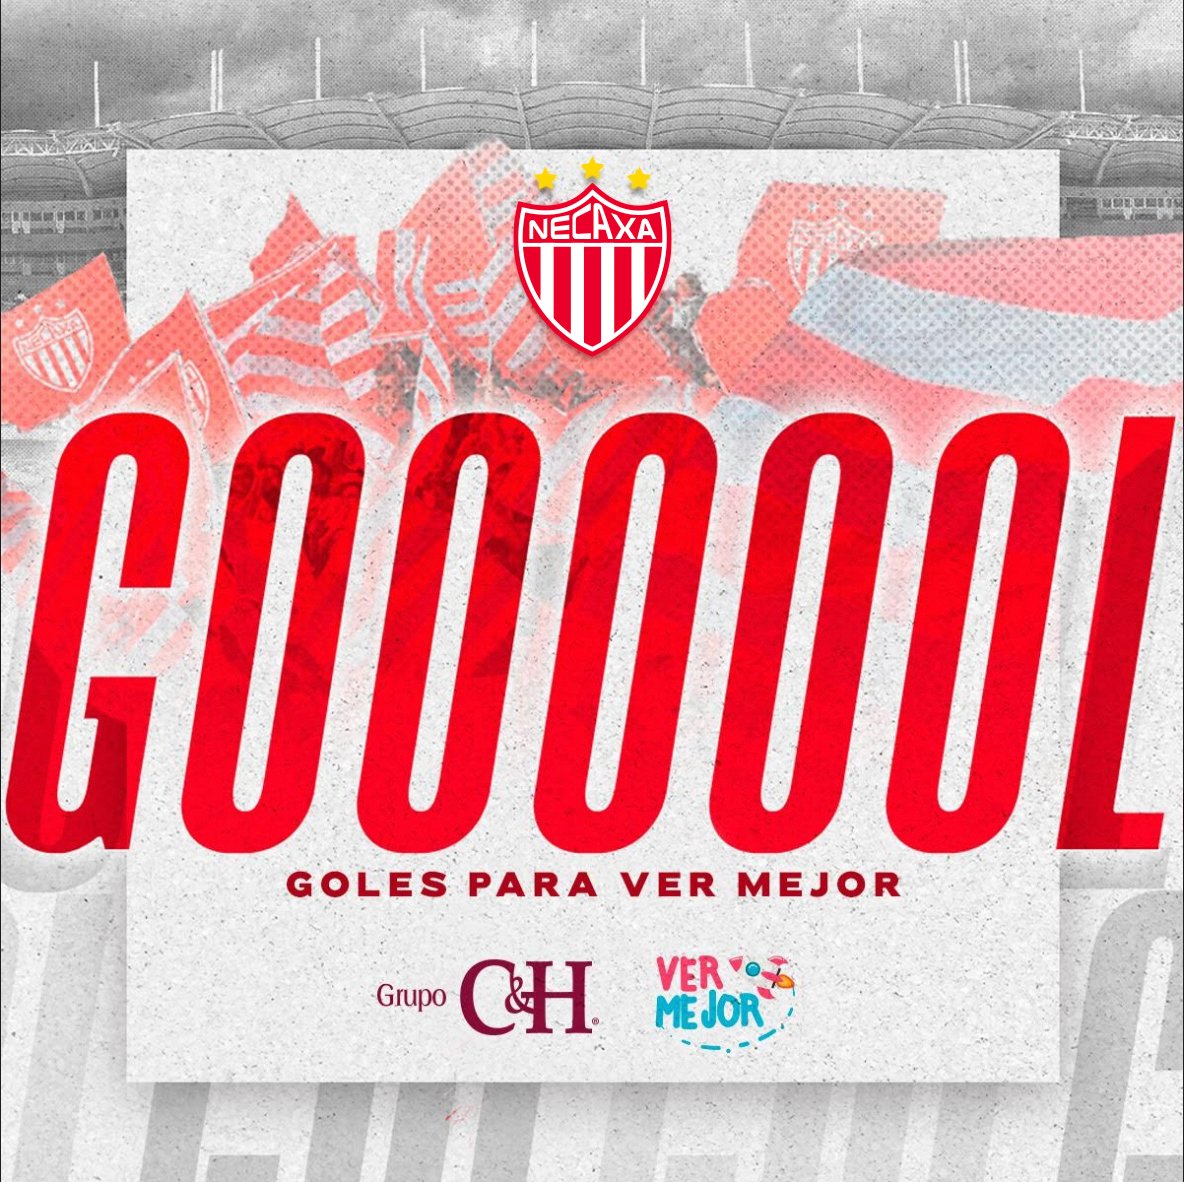 43'⏱| #NECvsMZT | 1-3 | ¡Gooooool! María Costa descuenta en el marcador. ¡Vamos! 

#FuerzaCentellas ⚡
#GolesParaVerMejor @grupo_cyh